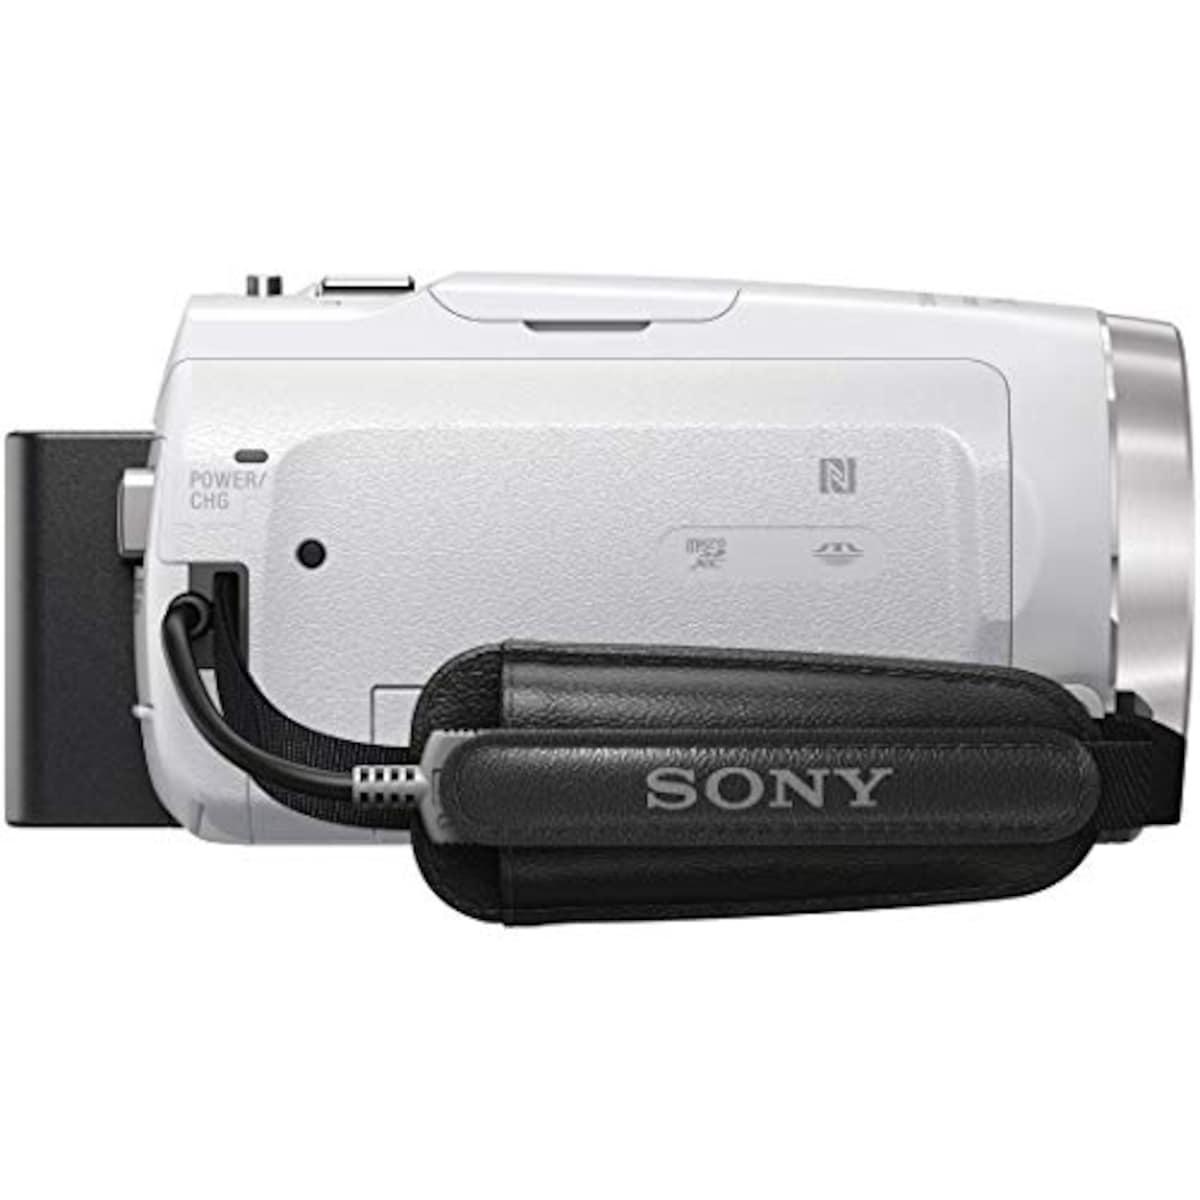  【CX680 と ケース&ストラップ セット】 大切なカメラをキズや汚れからガードしたい方に。HDR-CX680 ホワイト + LCS-MCS2 ライトブラウン画像12 